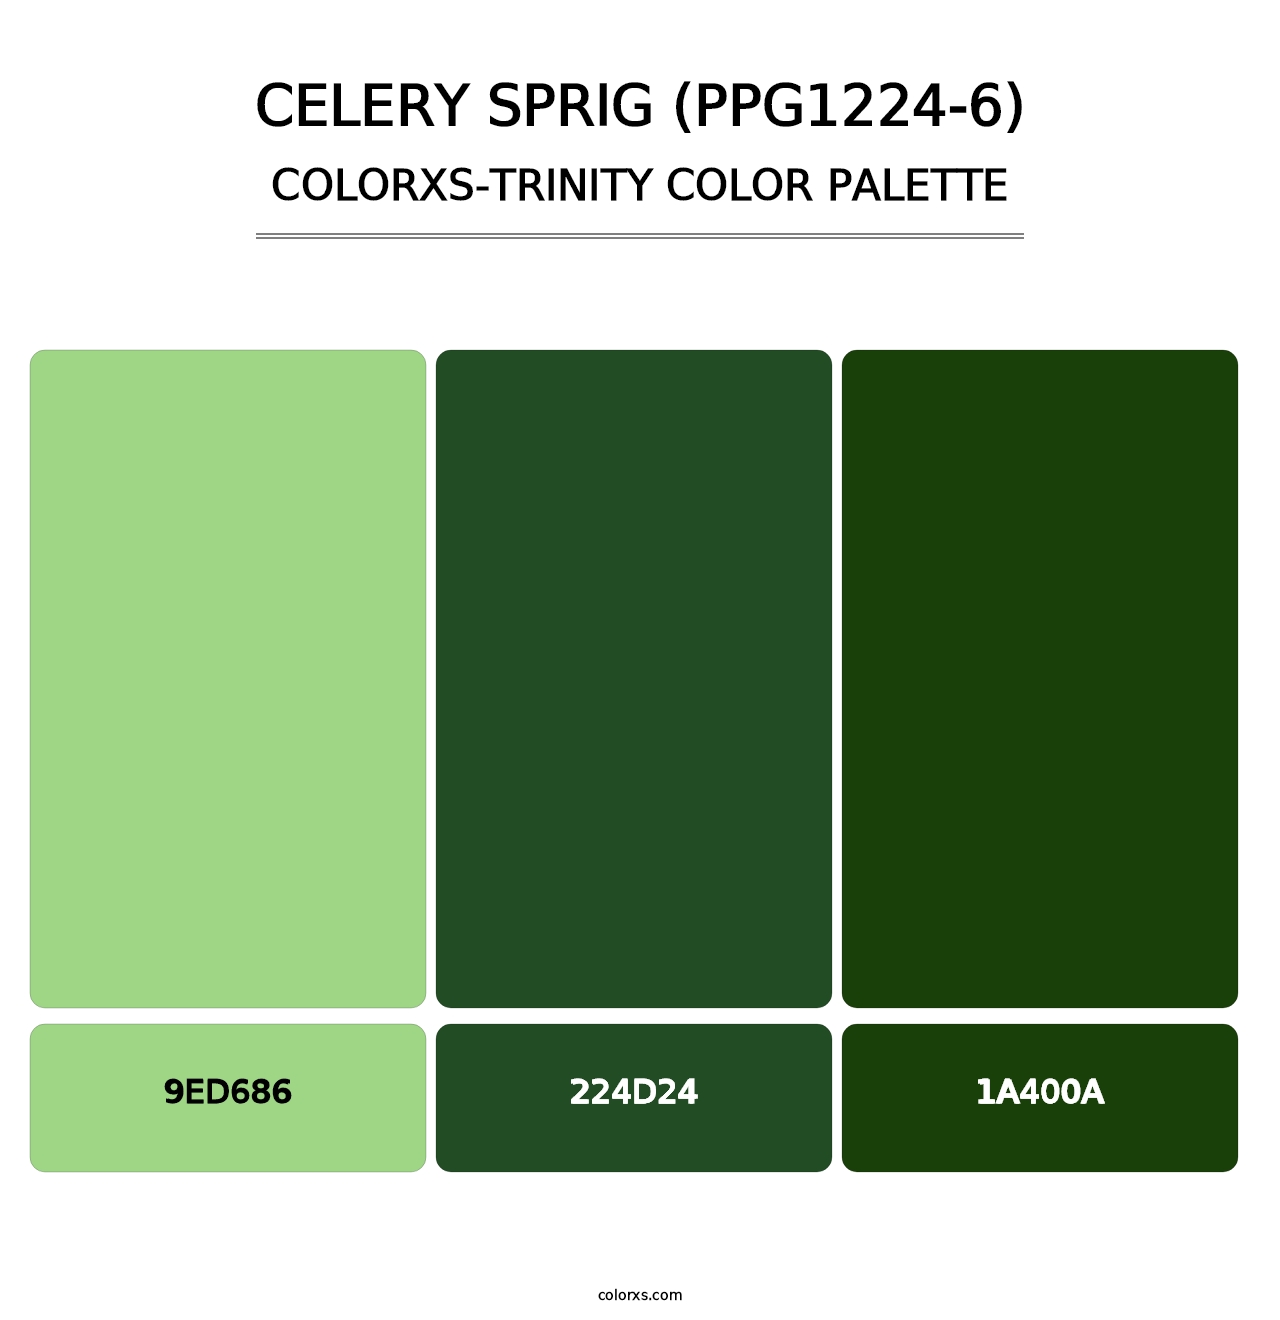 Celery Sprig (PPG1224-6) - Colorxs Trinity Palette